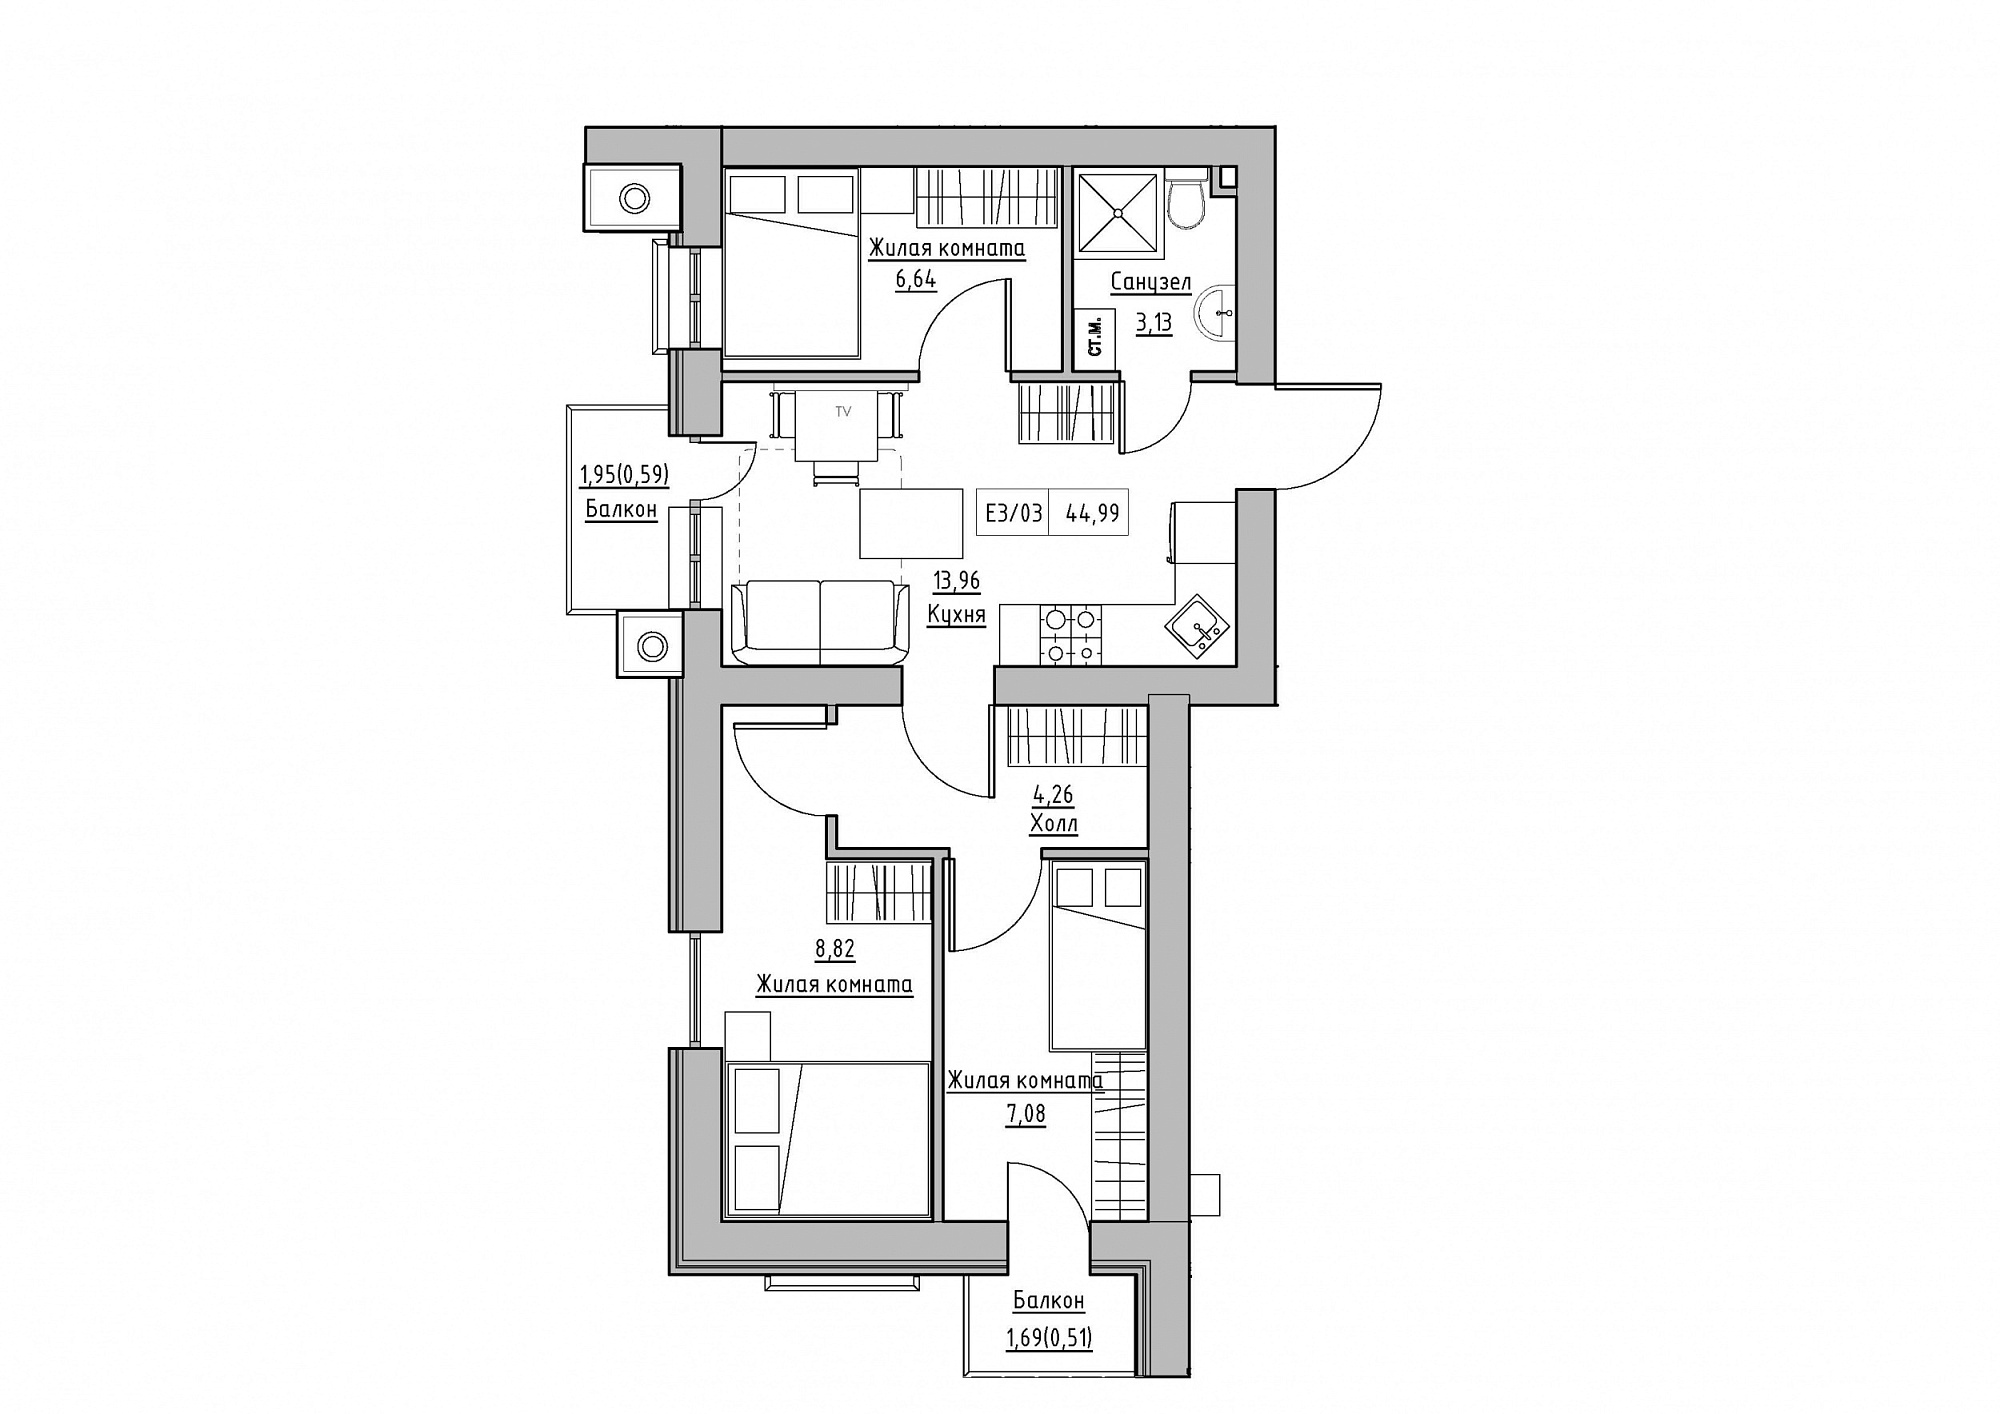 Планировка 3-к квартира площей 44.99м2, KS-012-05/0011.